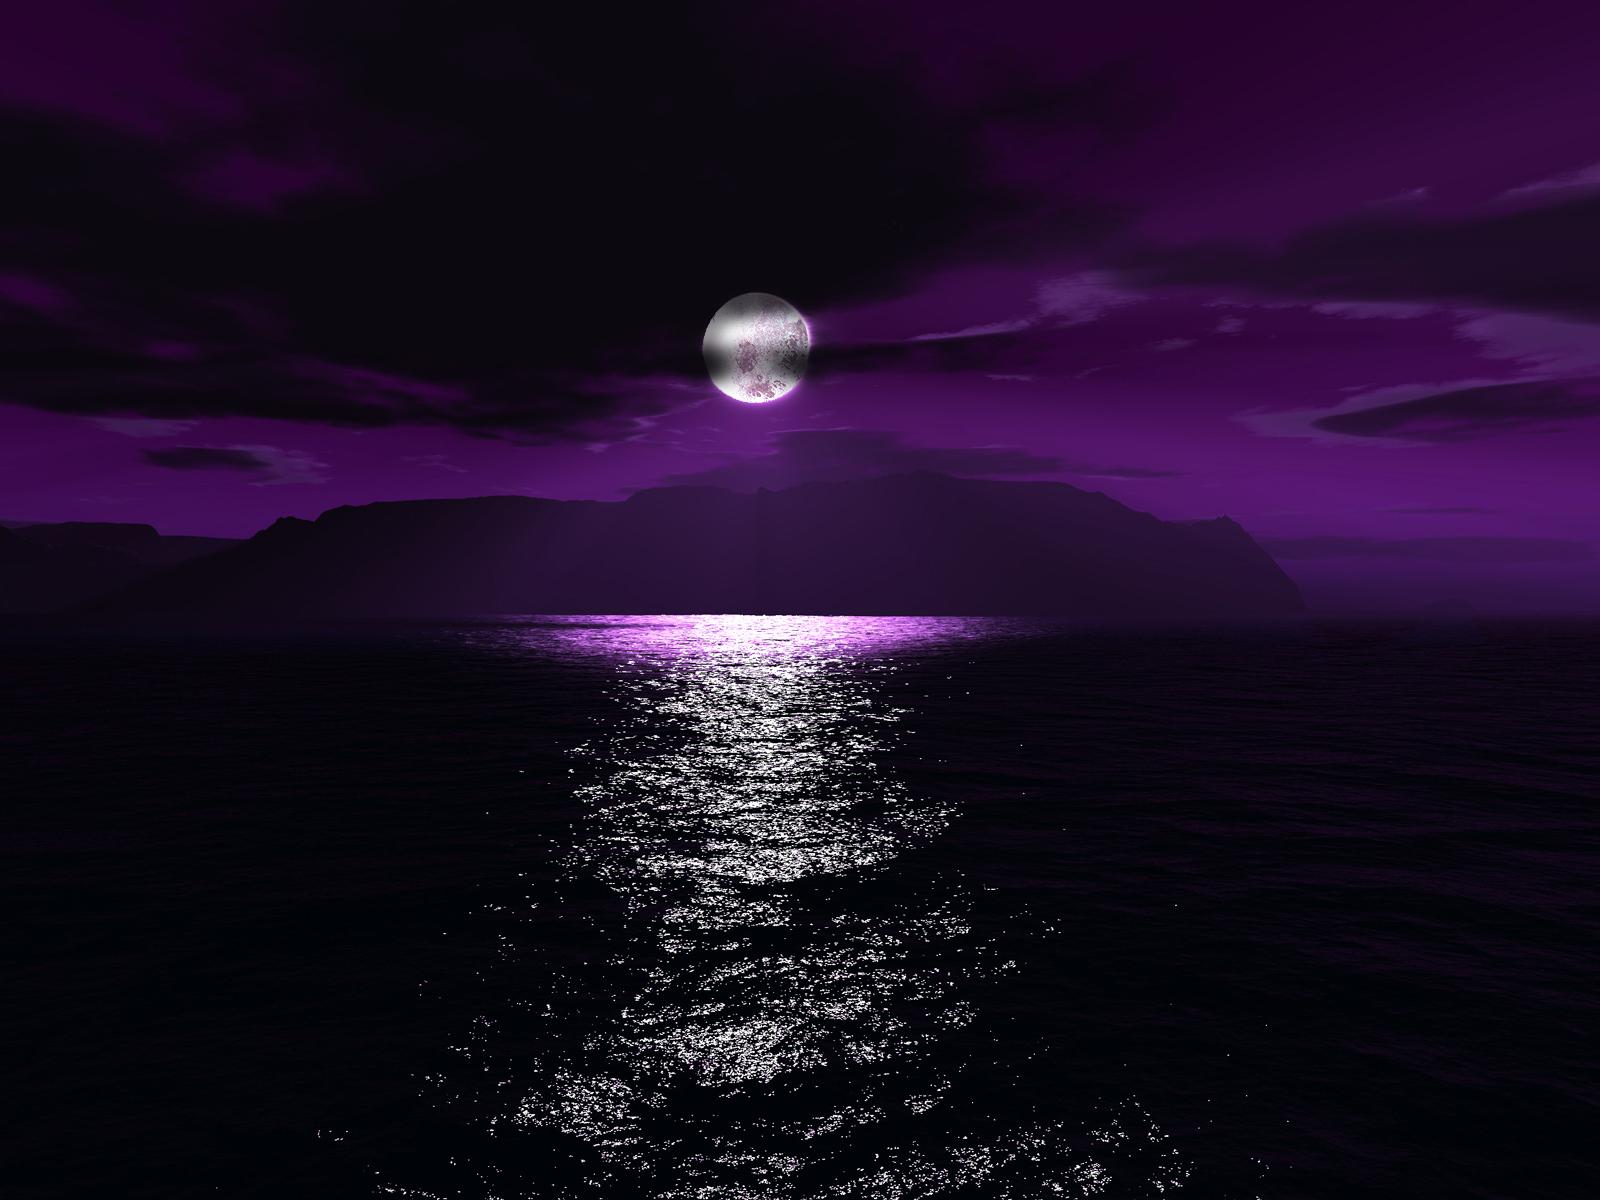 Purple Moon Wallpaper HD In Space Imageci